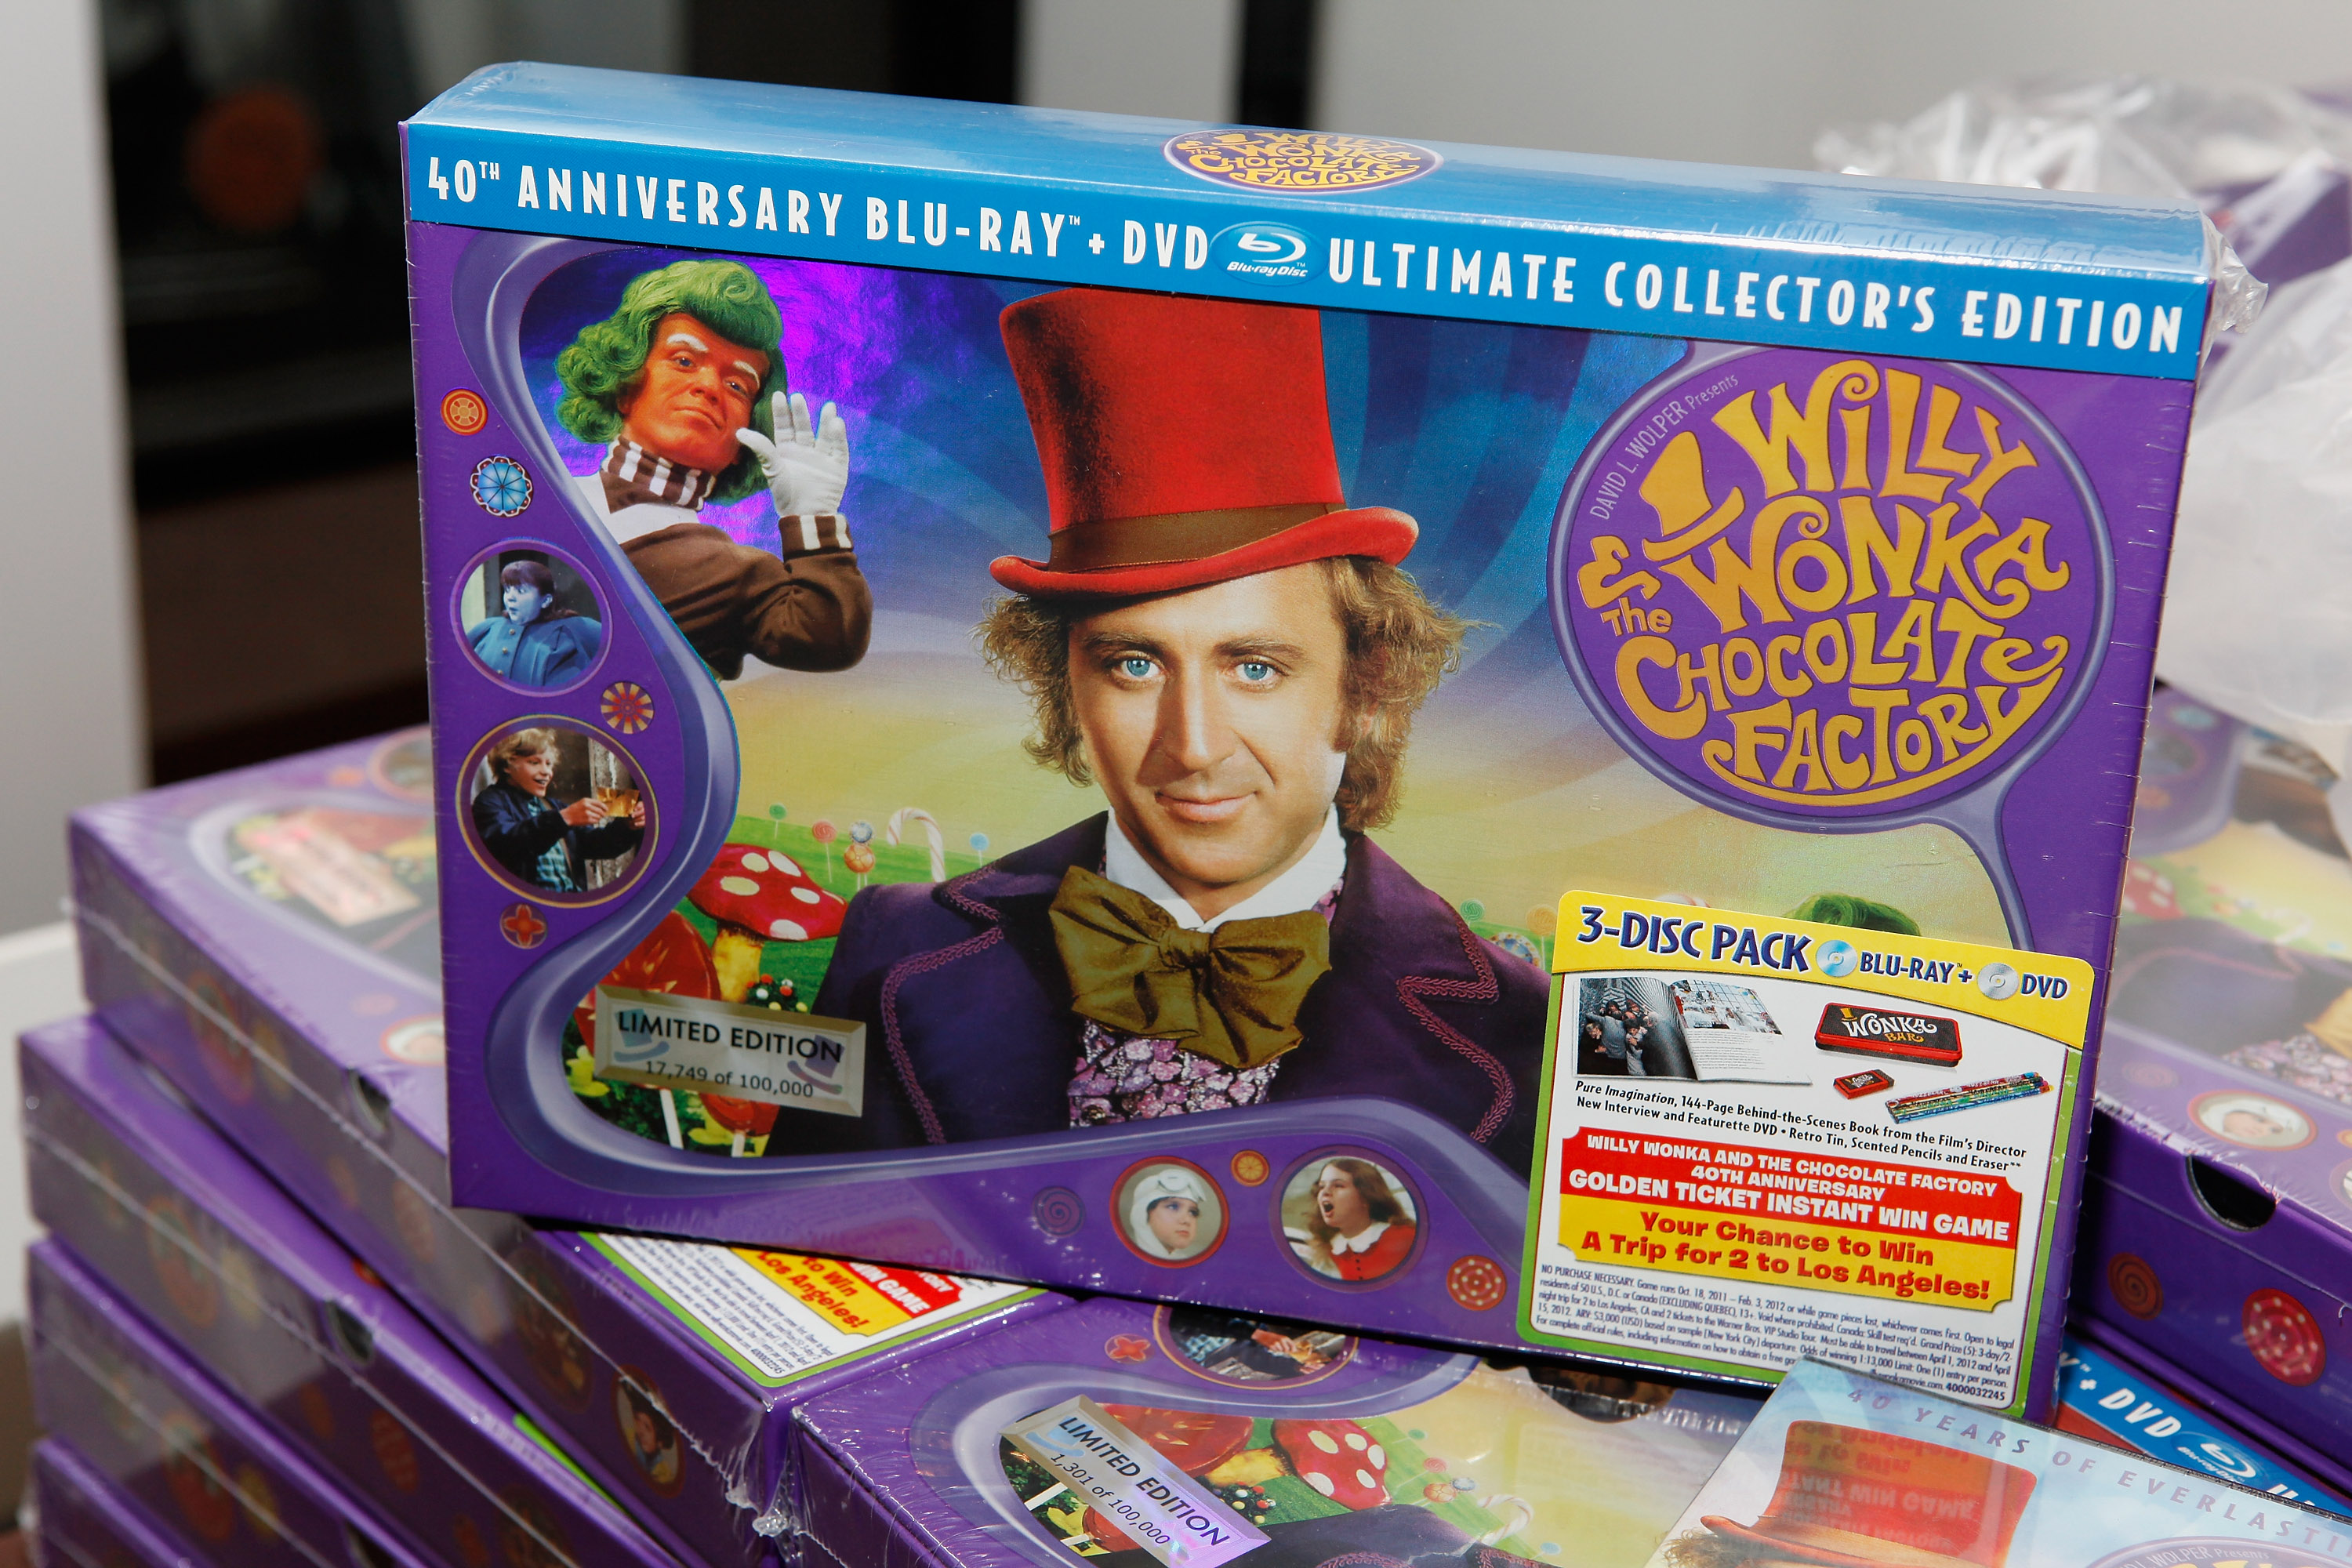 Une photo du coffret DVD lors du 40e anniversaire de "Willy Wonka et la chocolaterie" le 18 octobre 2011 à New York | Source : Getty Images